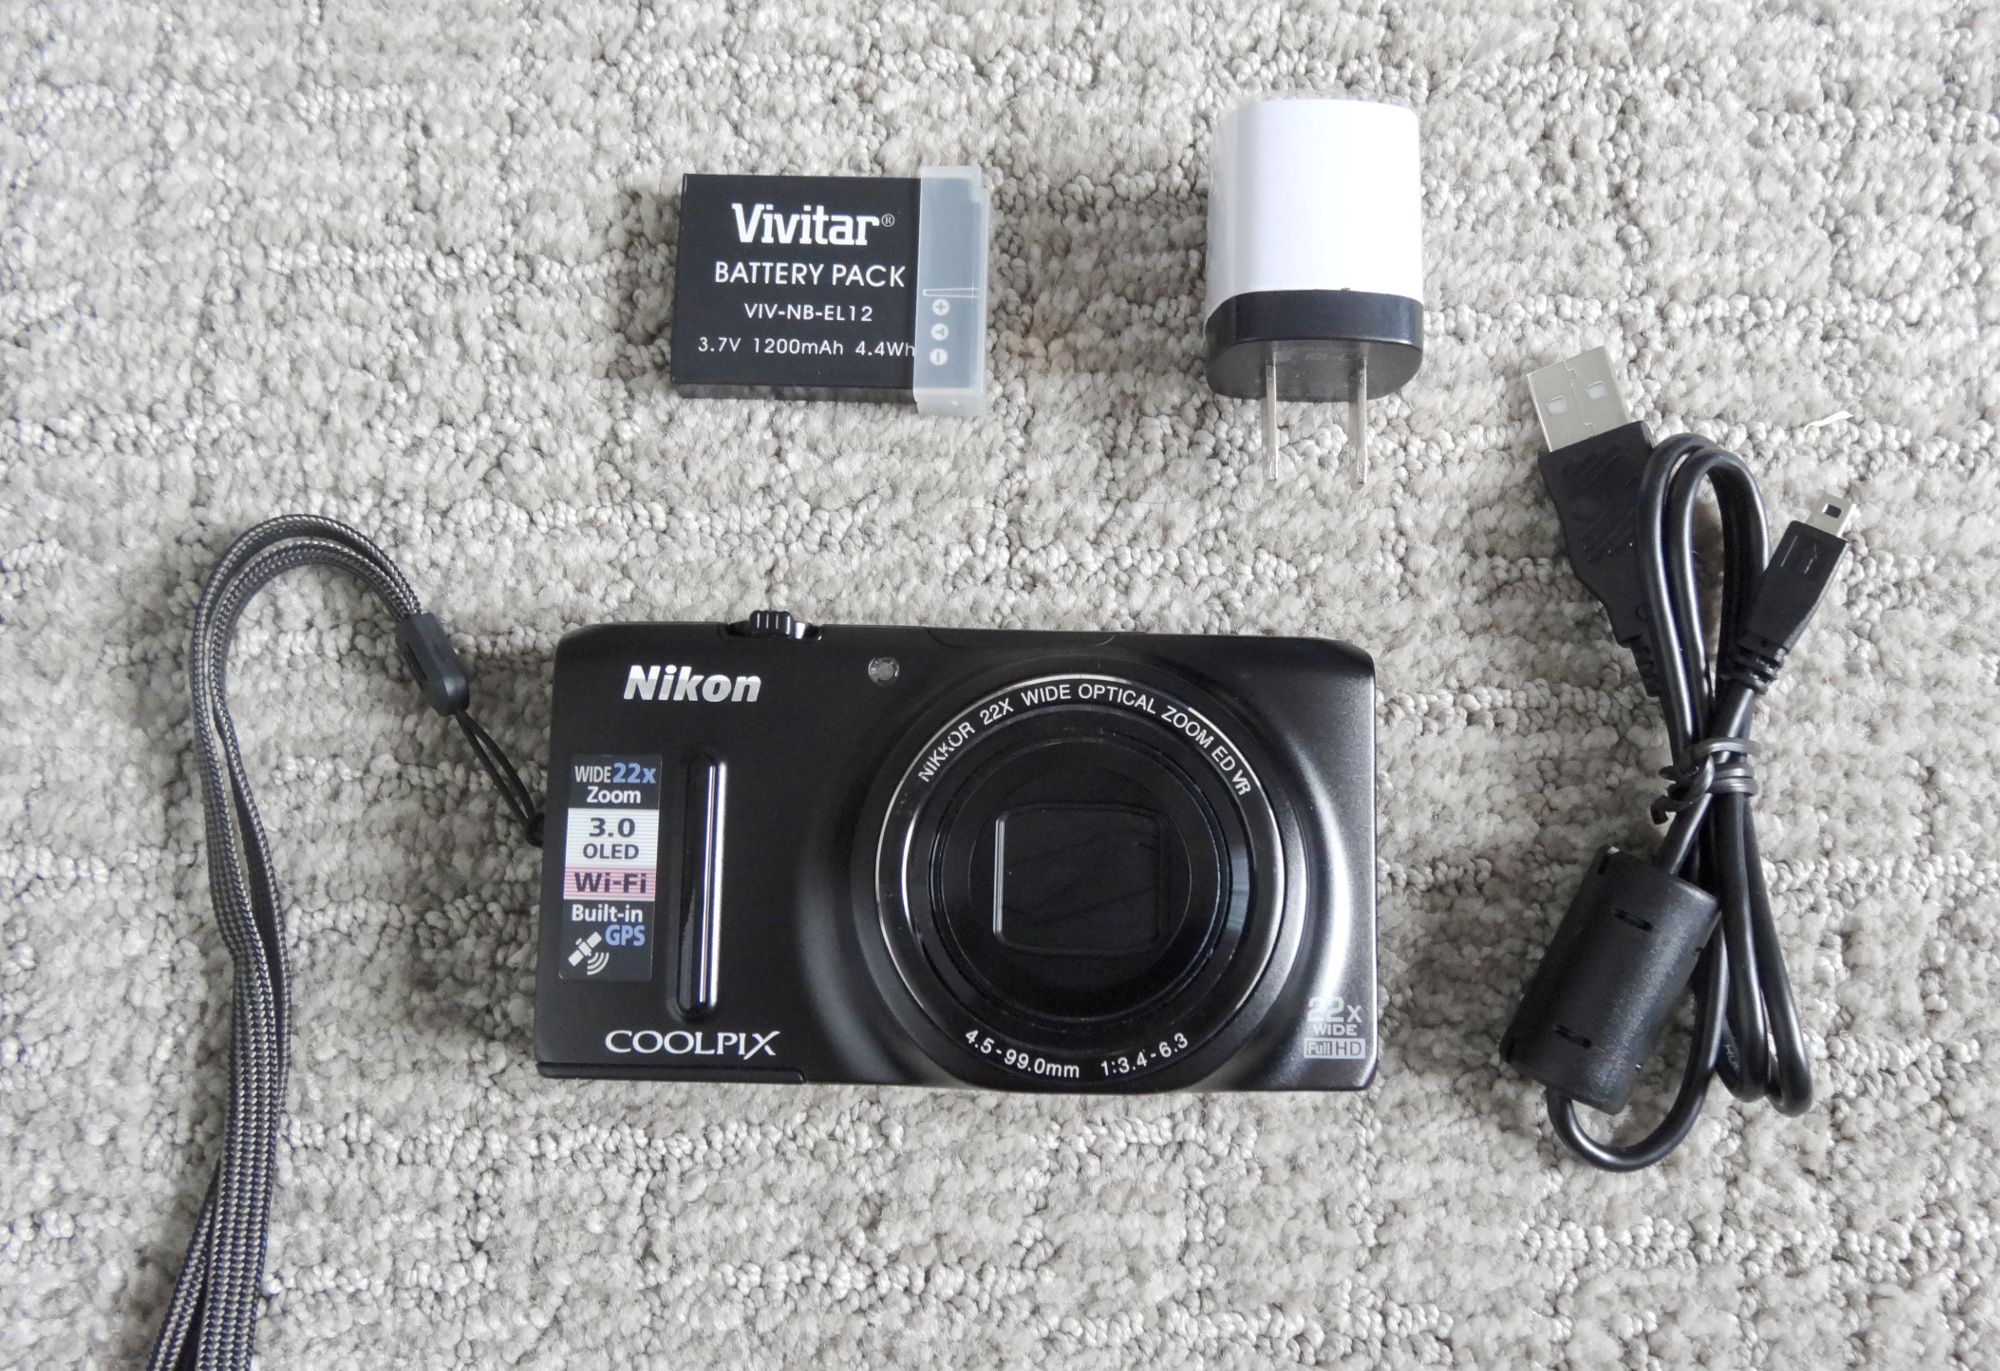 Digital Camera Nikon Coolpix. Like NEW.Wifi. GPS.18.3 mpx.22x zoom.Full HD video resolution - $99 (Saint Paul)